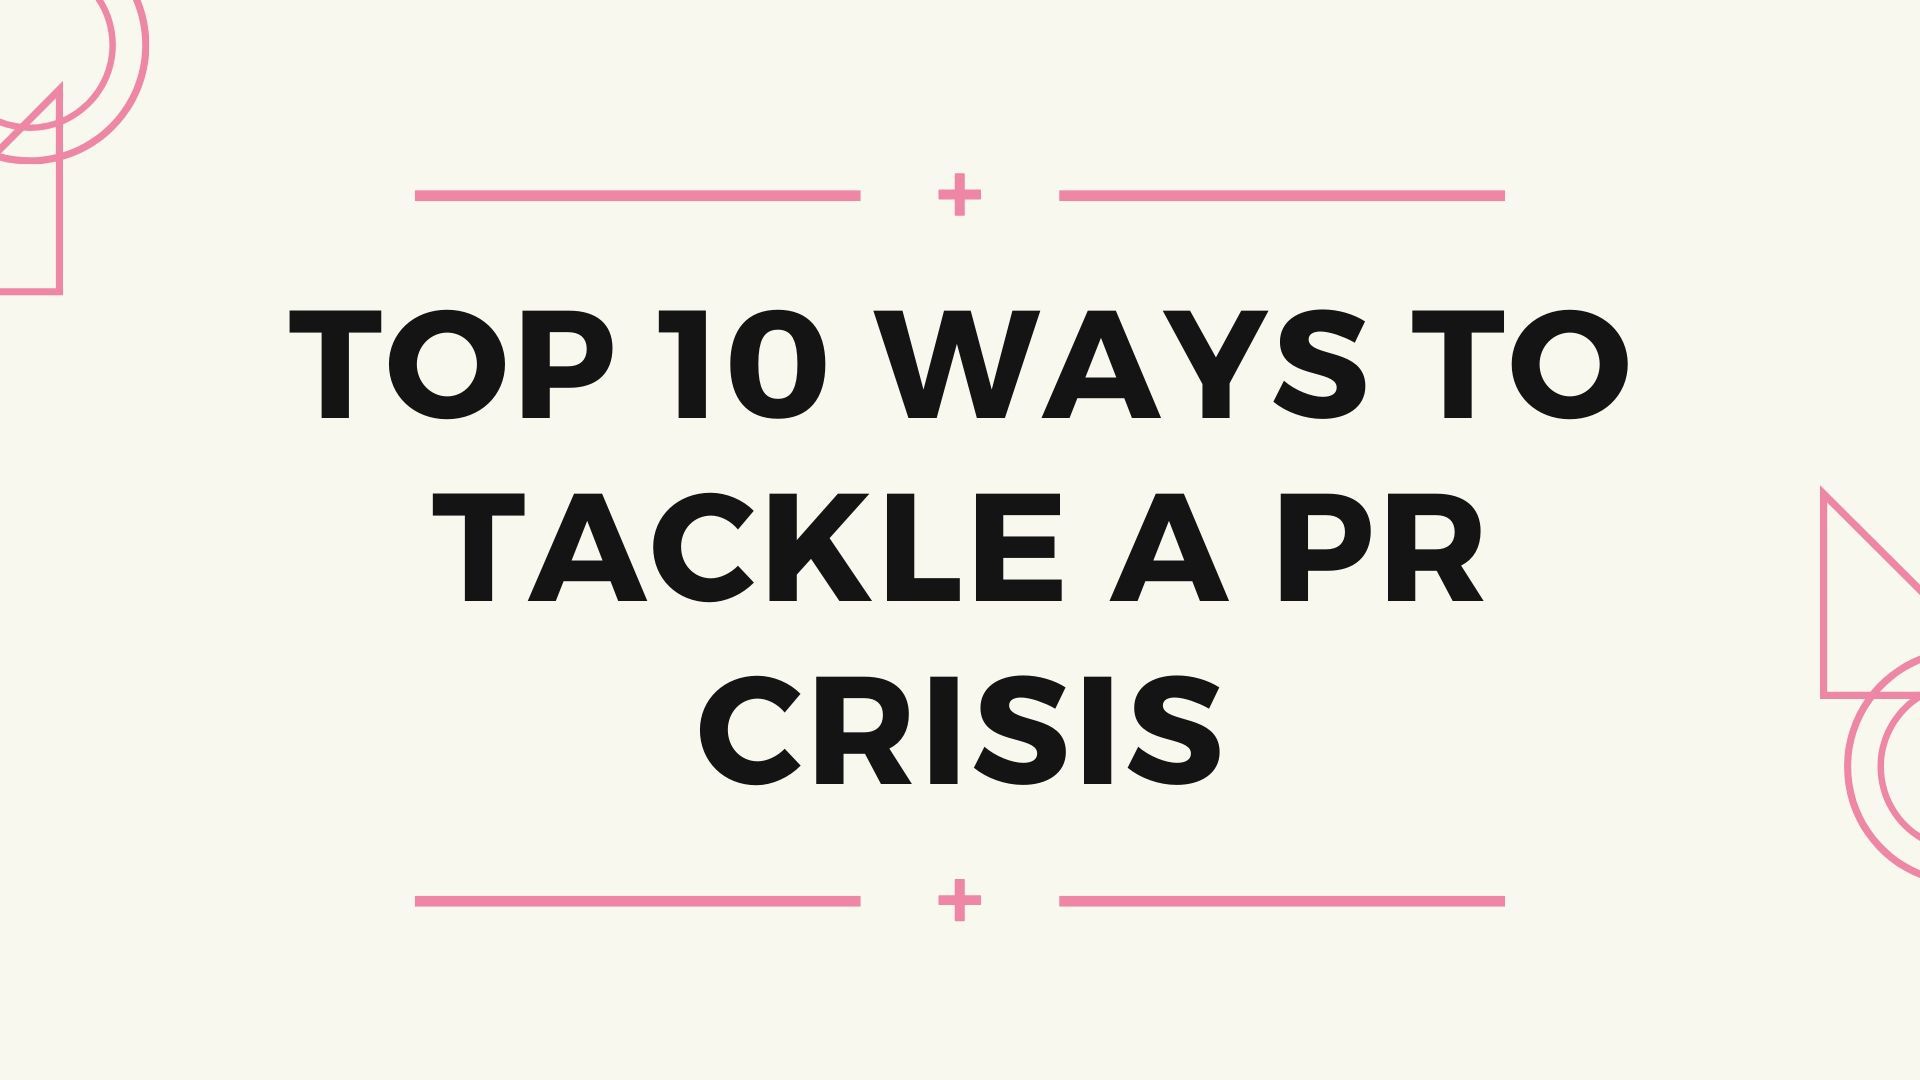 Top 10 Ways to Tackle a PR Crisis